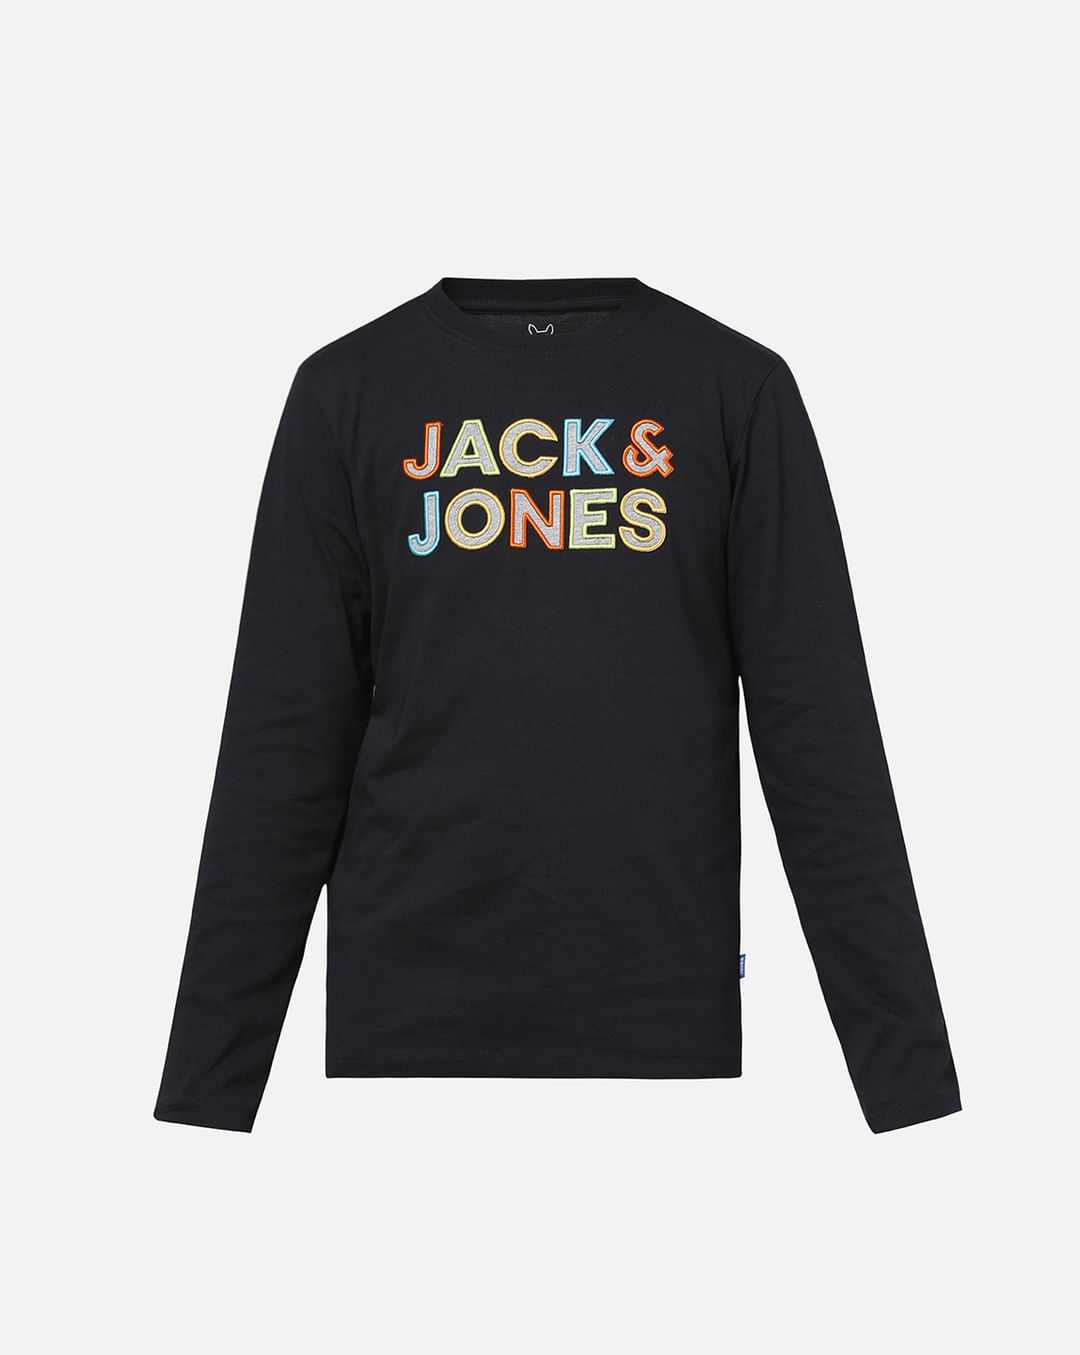 Jack & Jones Originals big chest logo t-shirt